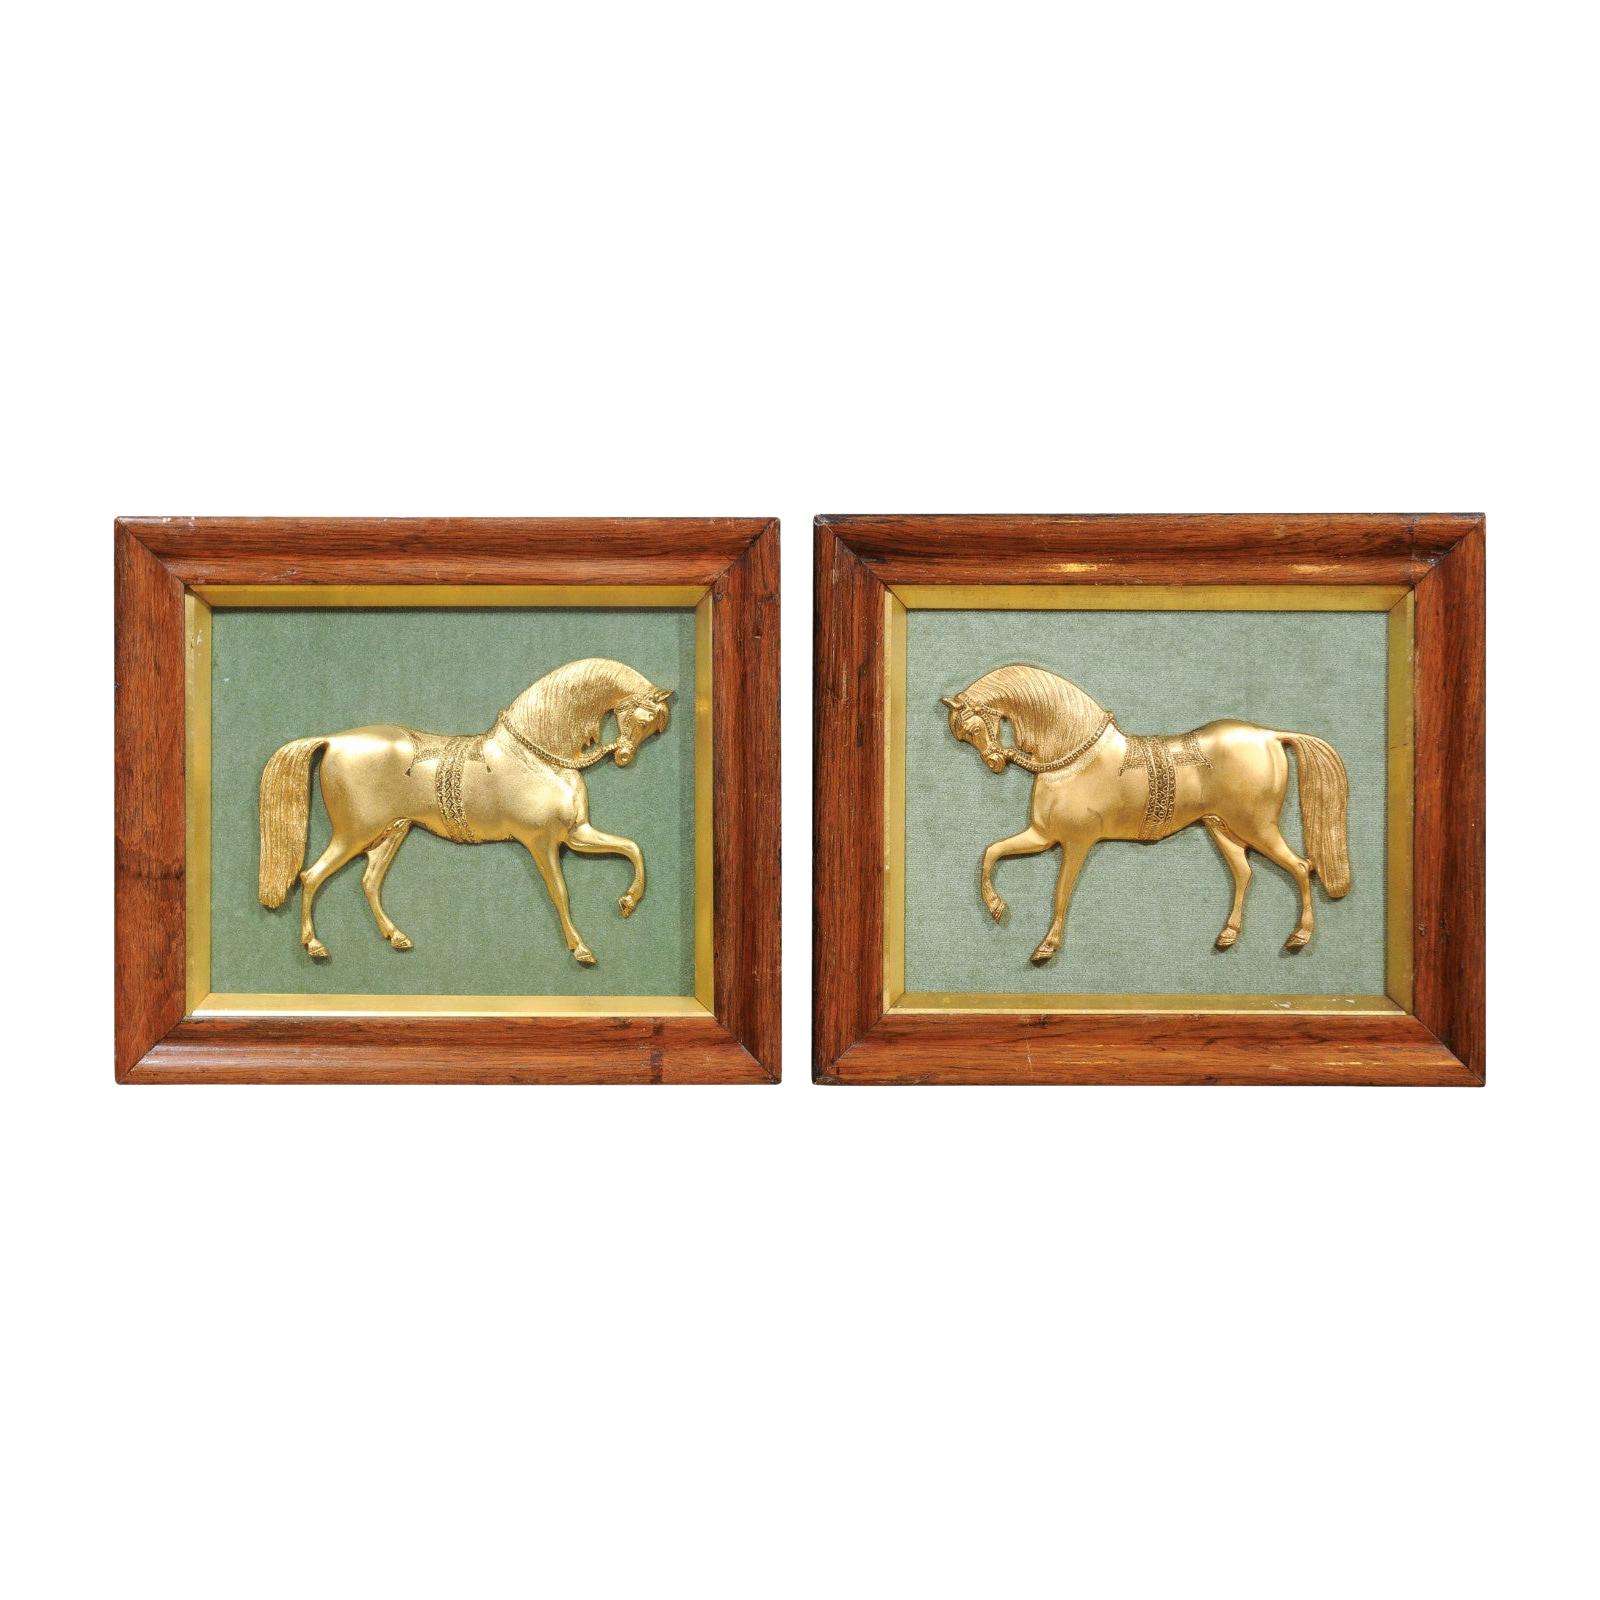 Pair of Framed English Gilt Bronze Horses Mounted on Green Velvet, circa 1850